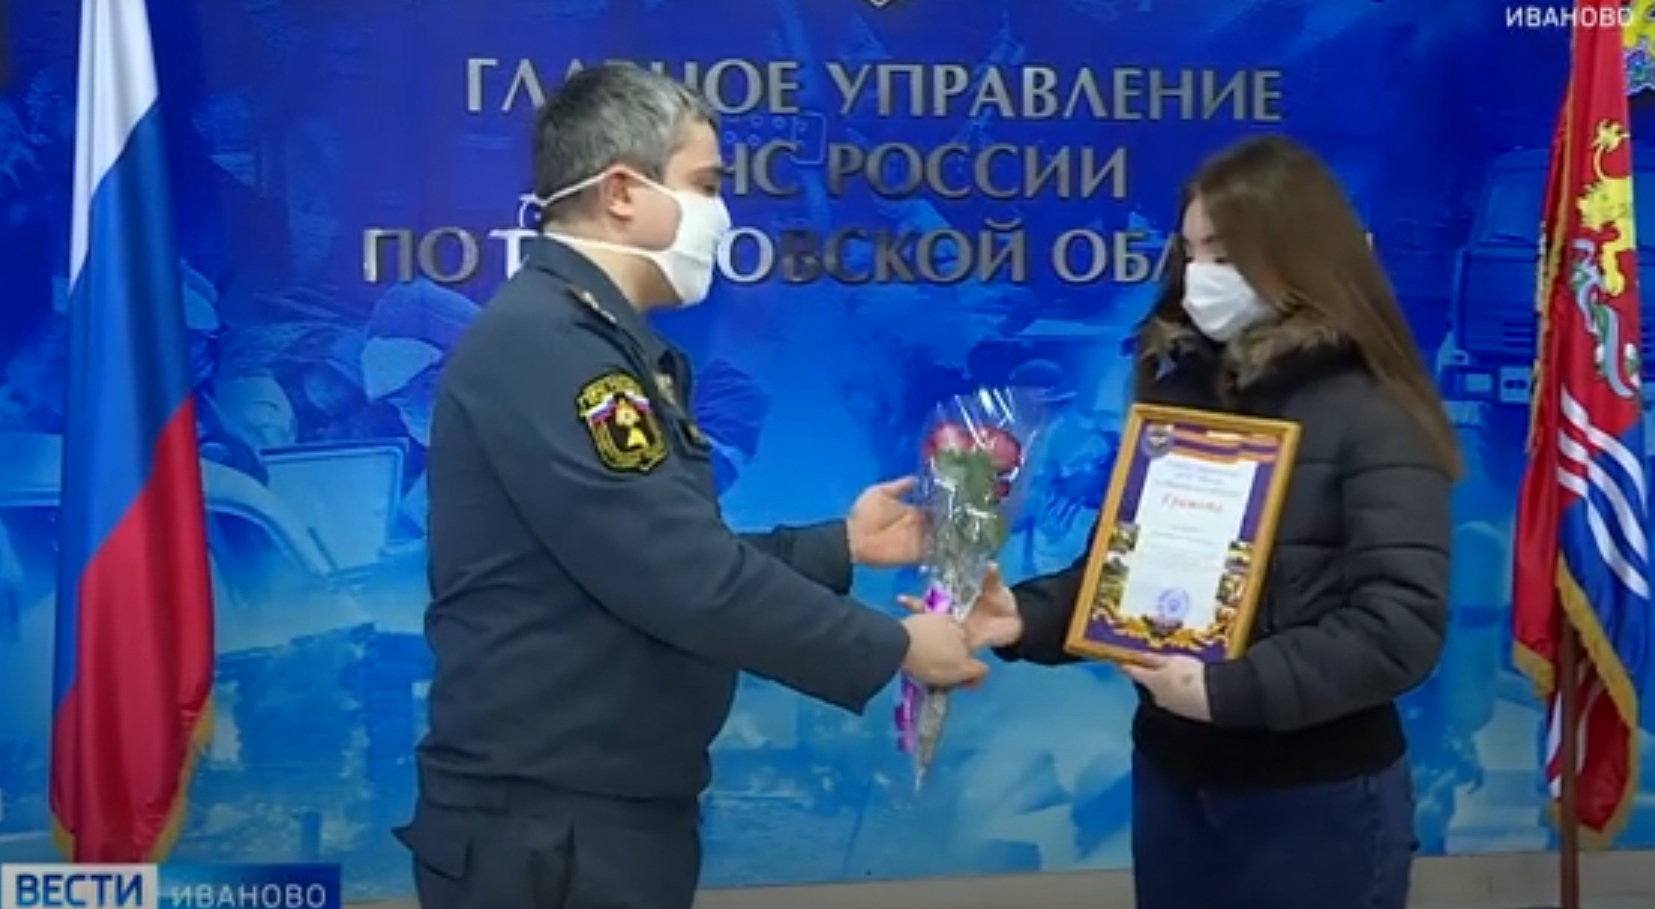 Ивановскую студентку наградили за спасение мужчины из пожара